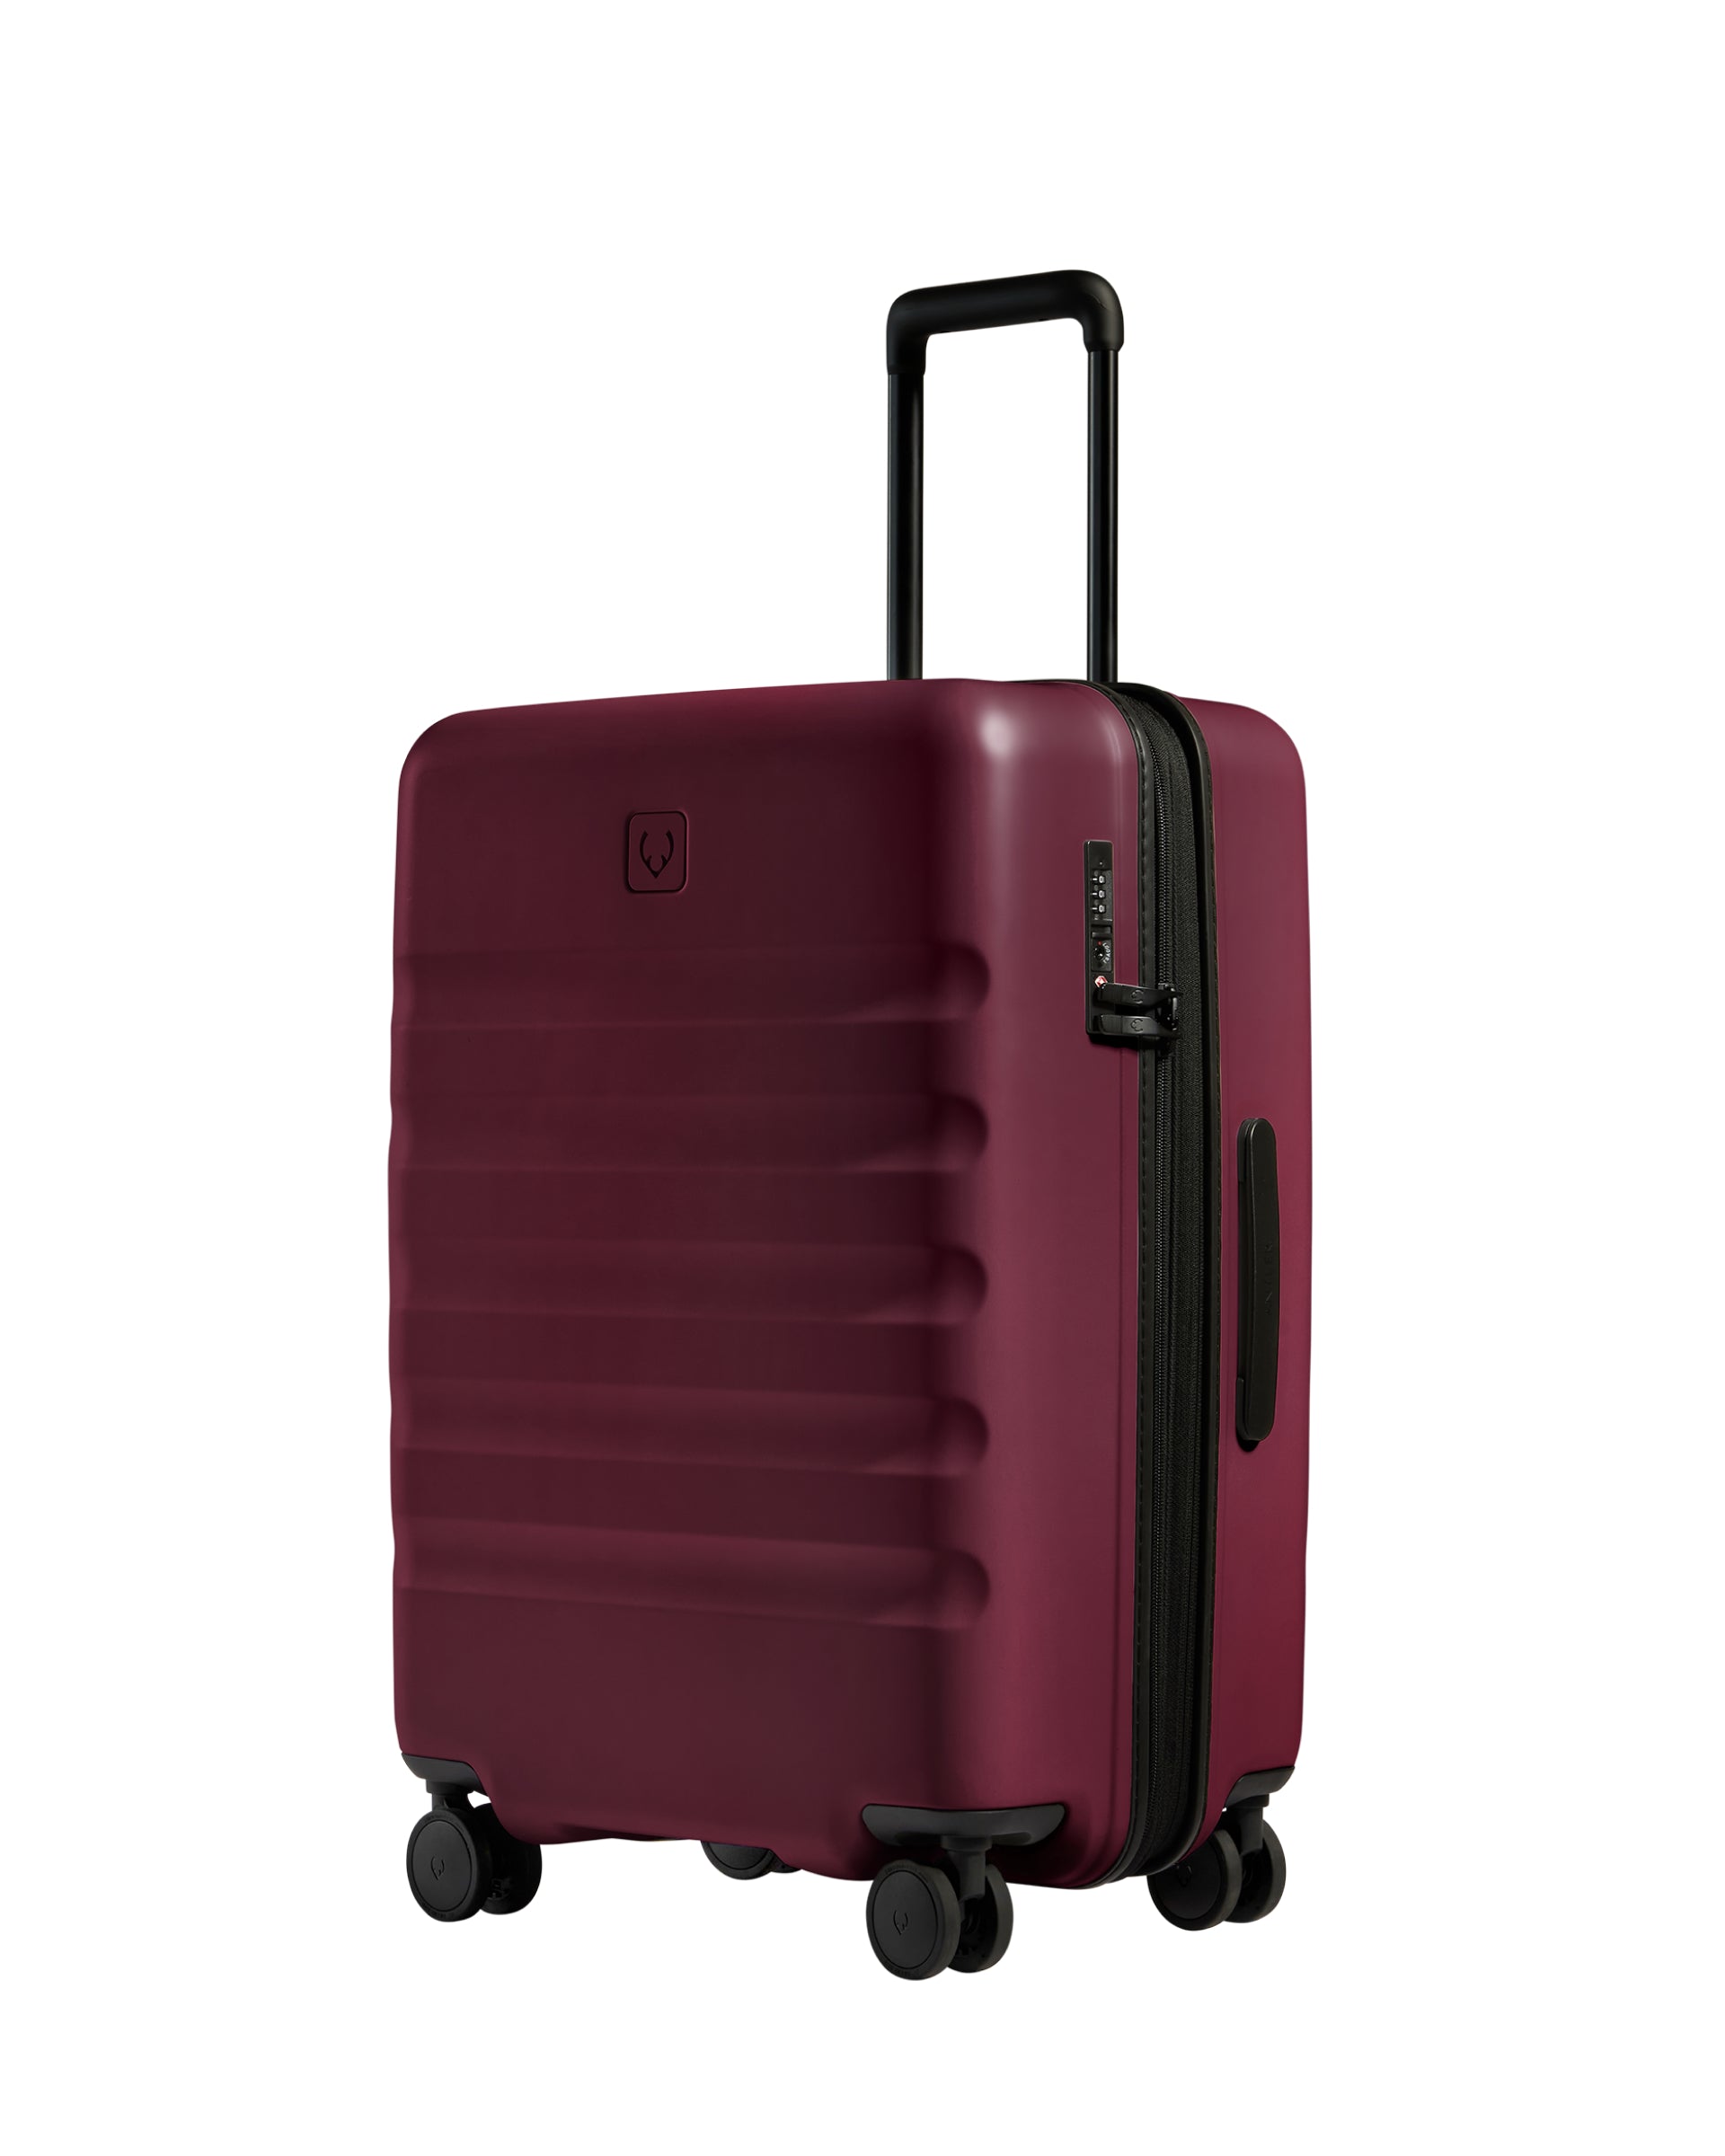 View Antler Icon Stripe Medium Suitcase In Heather Purple Size 455cm x 66cm x 30cm information